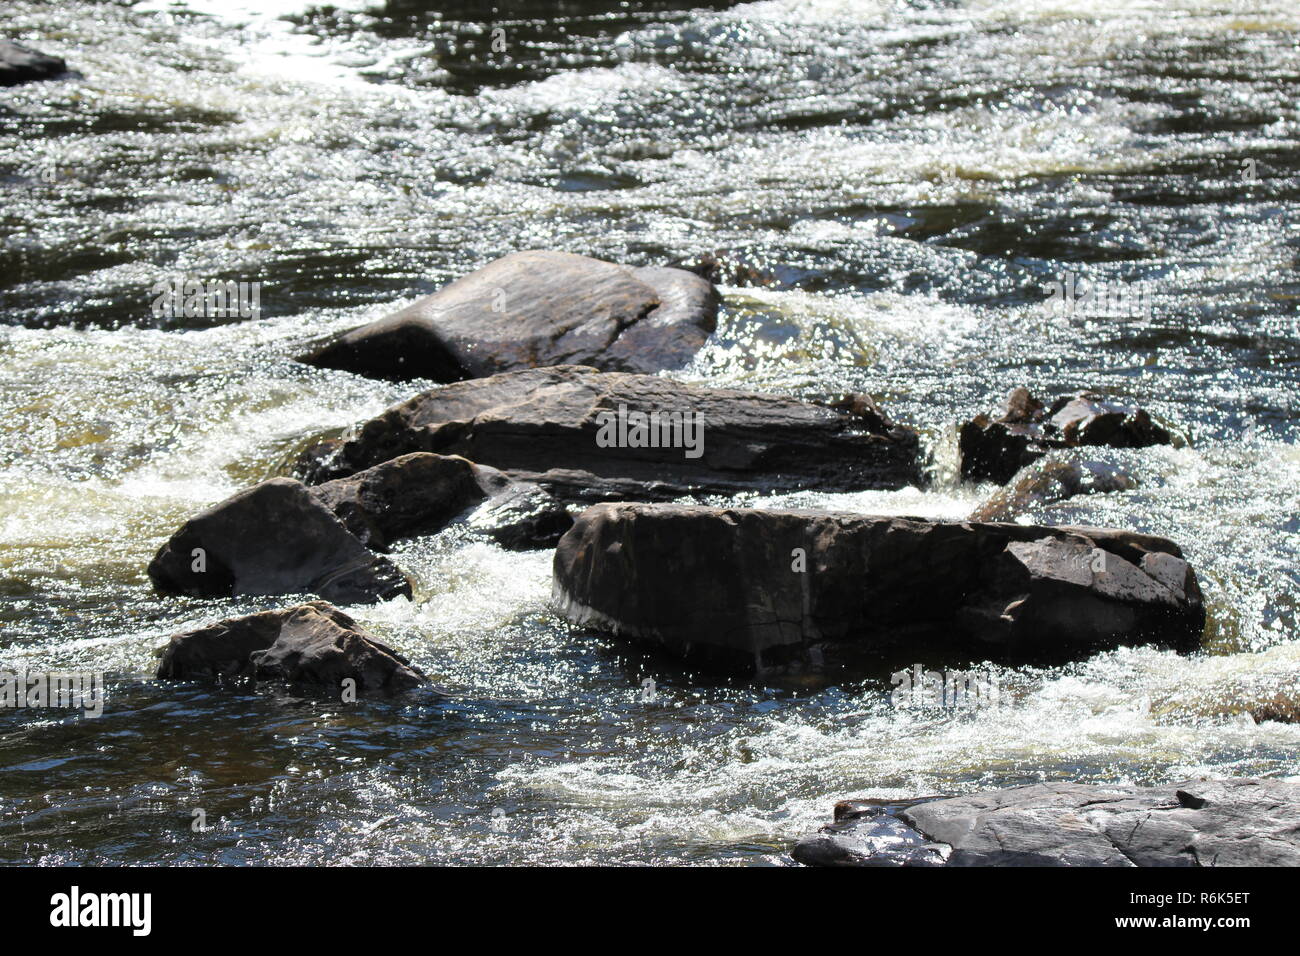 Cascade d'eau et nature / River in nature Stock Photo